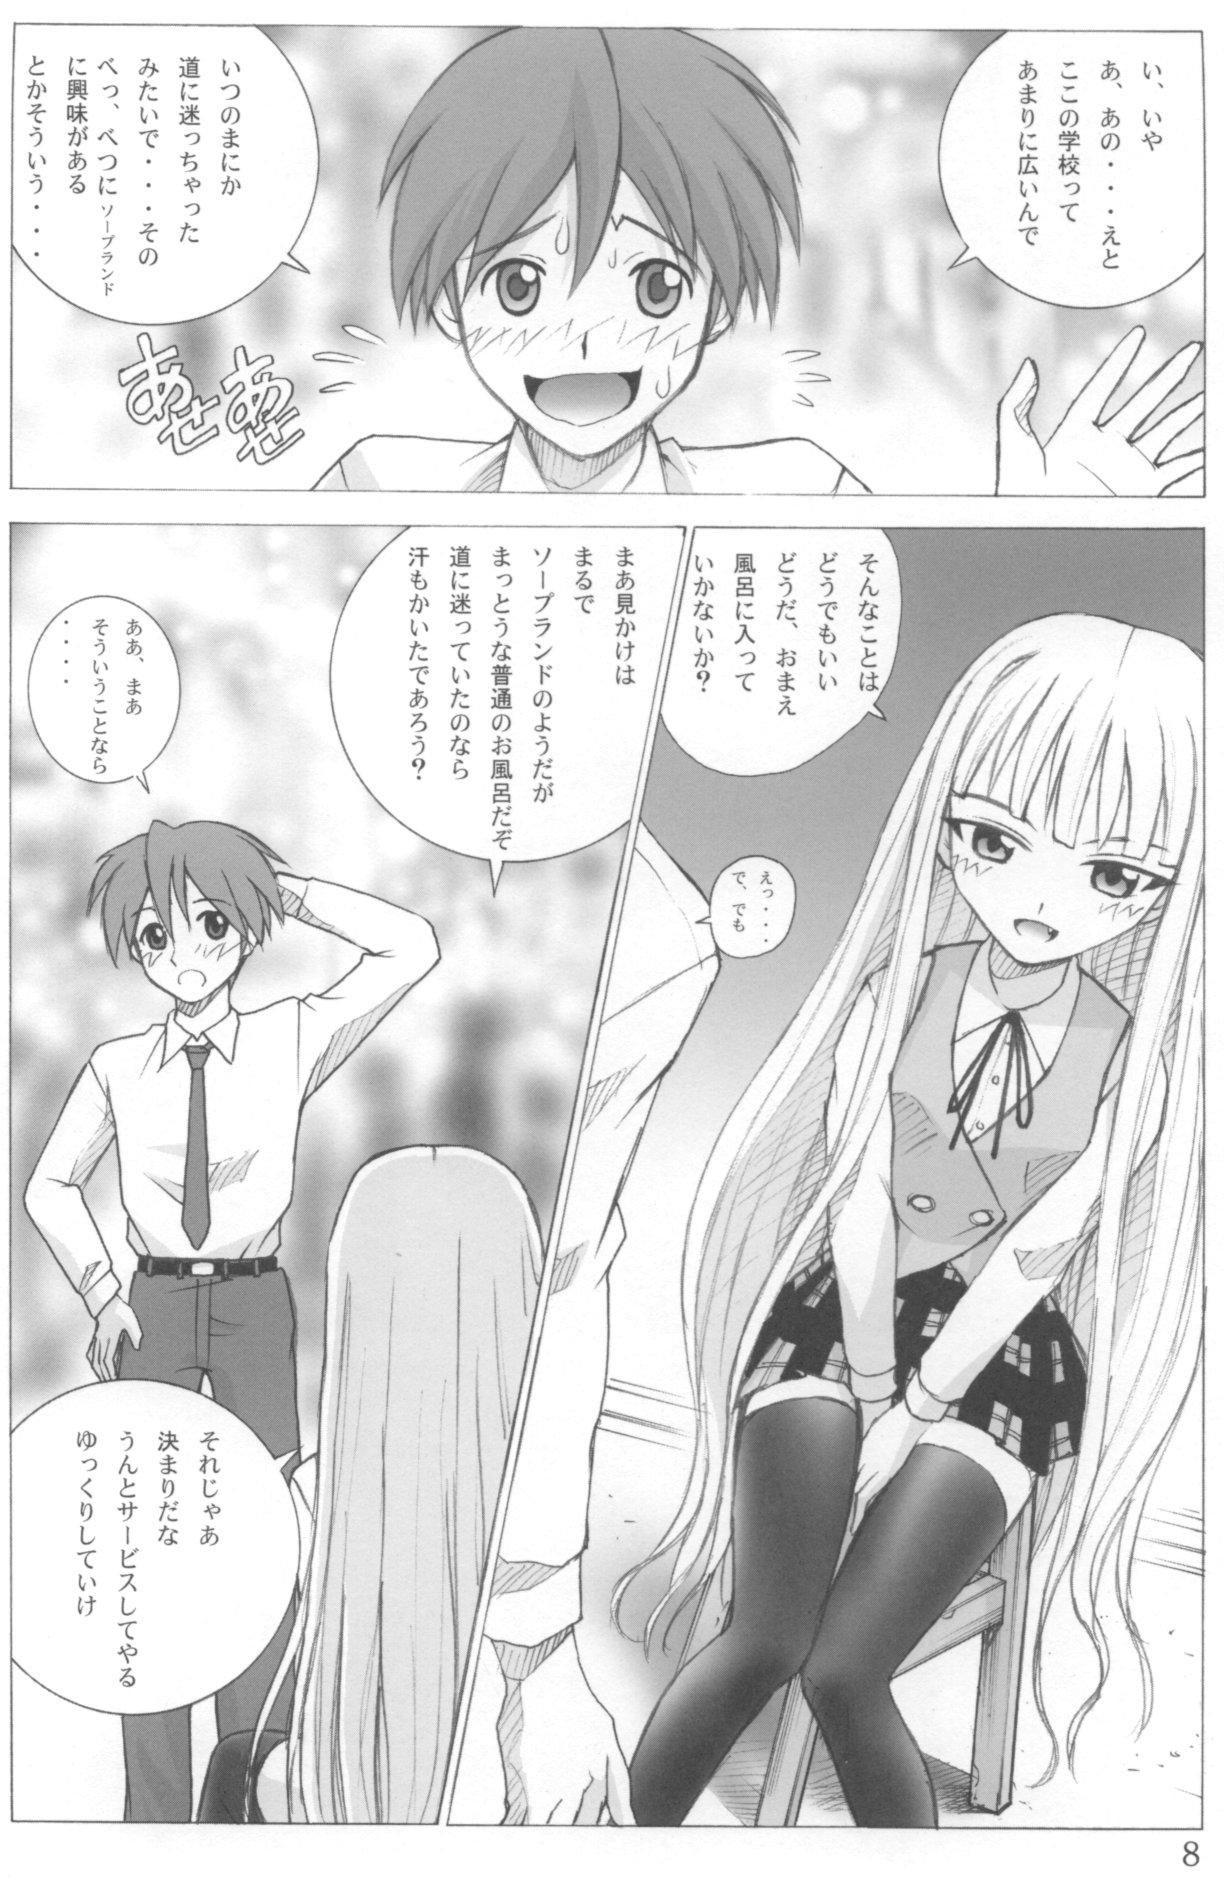 Creampies Evangelica - Mahou sensei negima Groupsex - Page 7